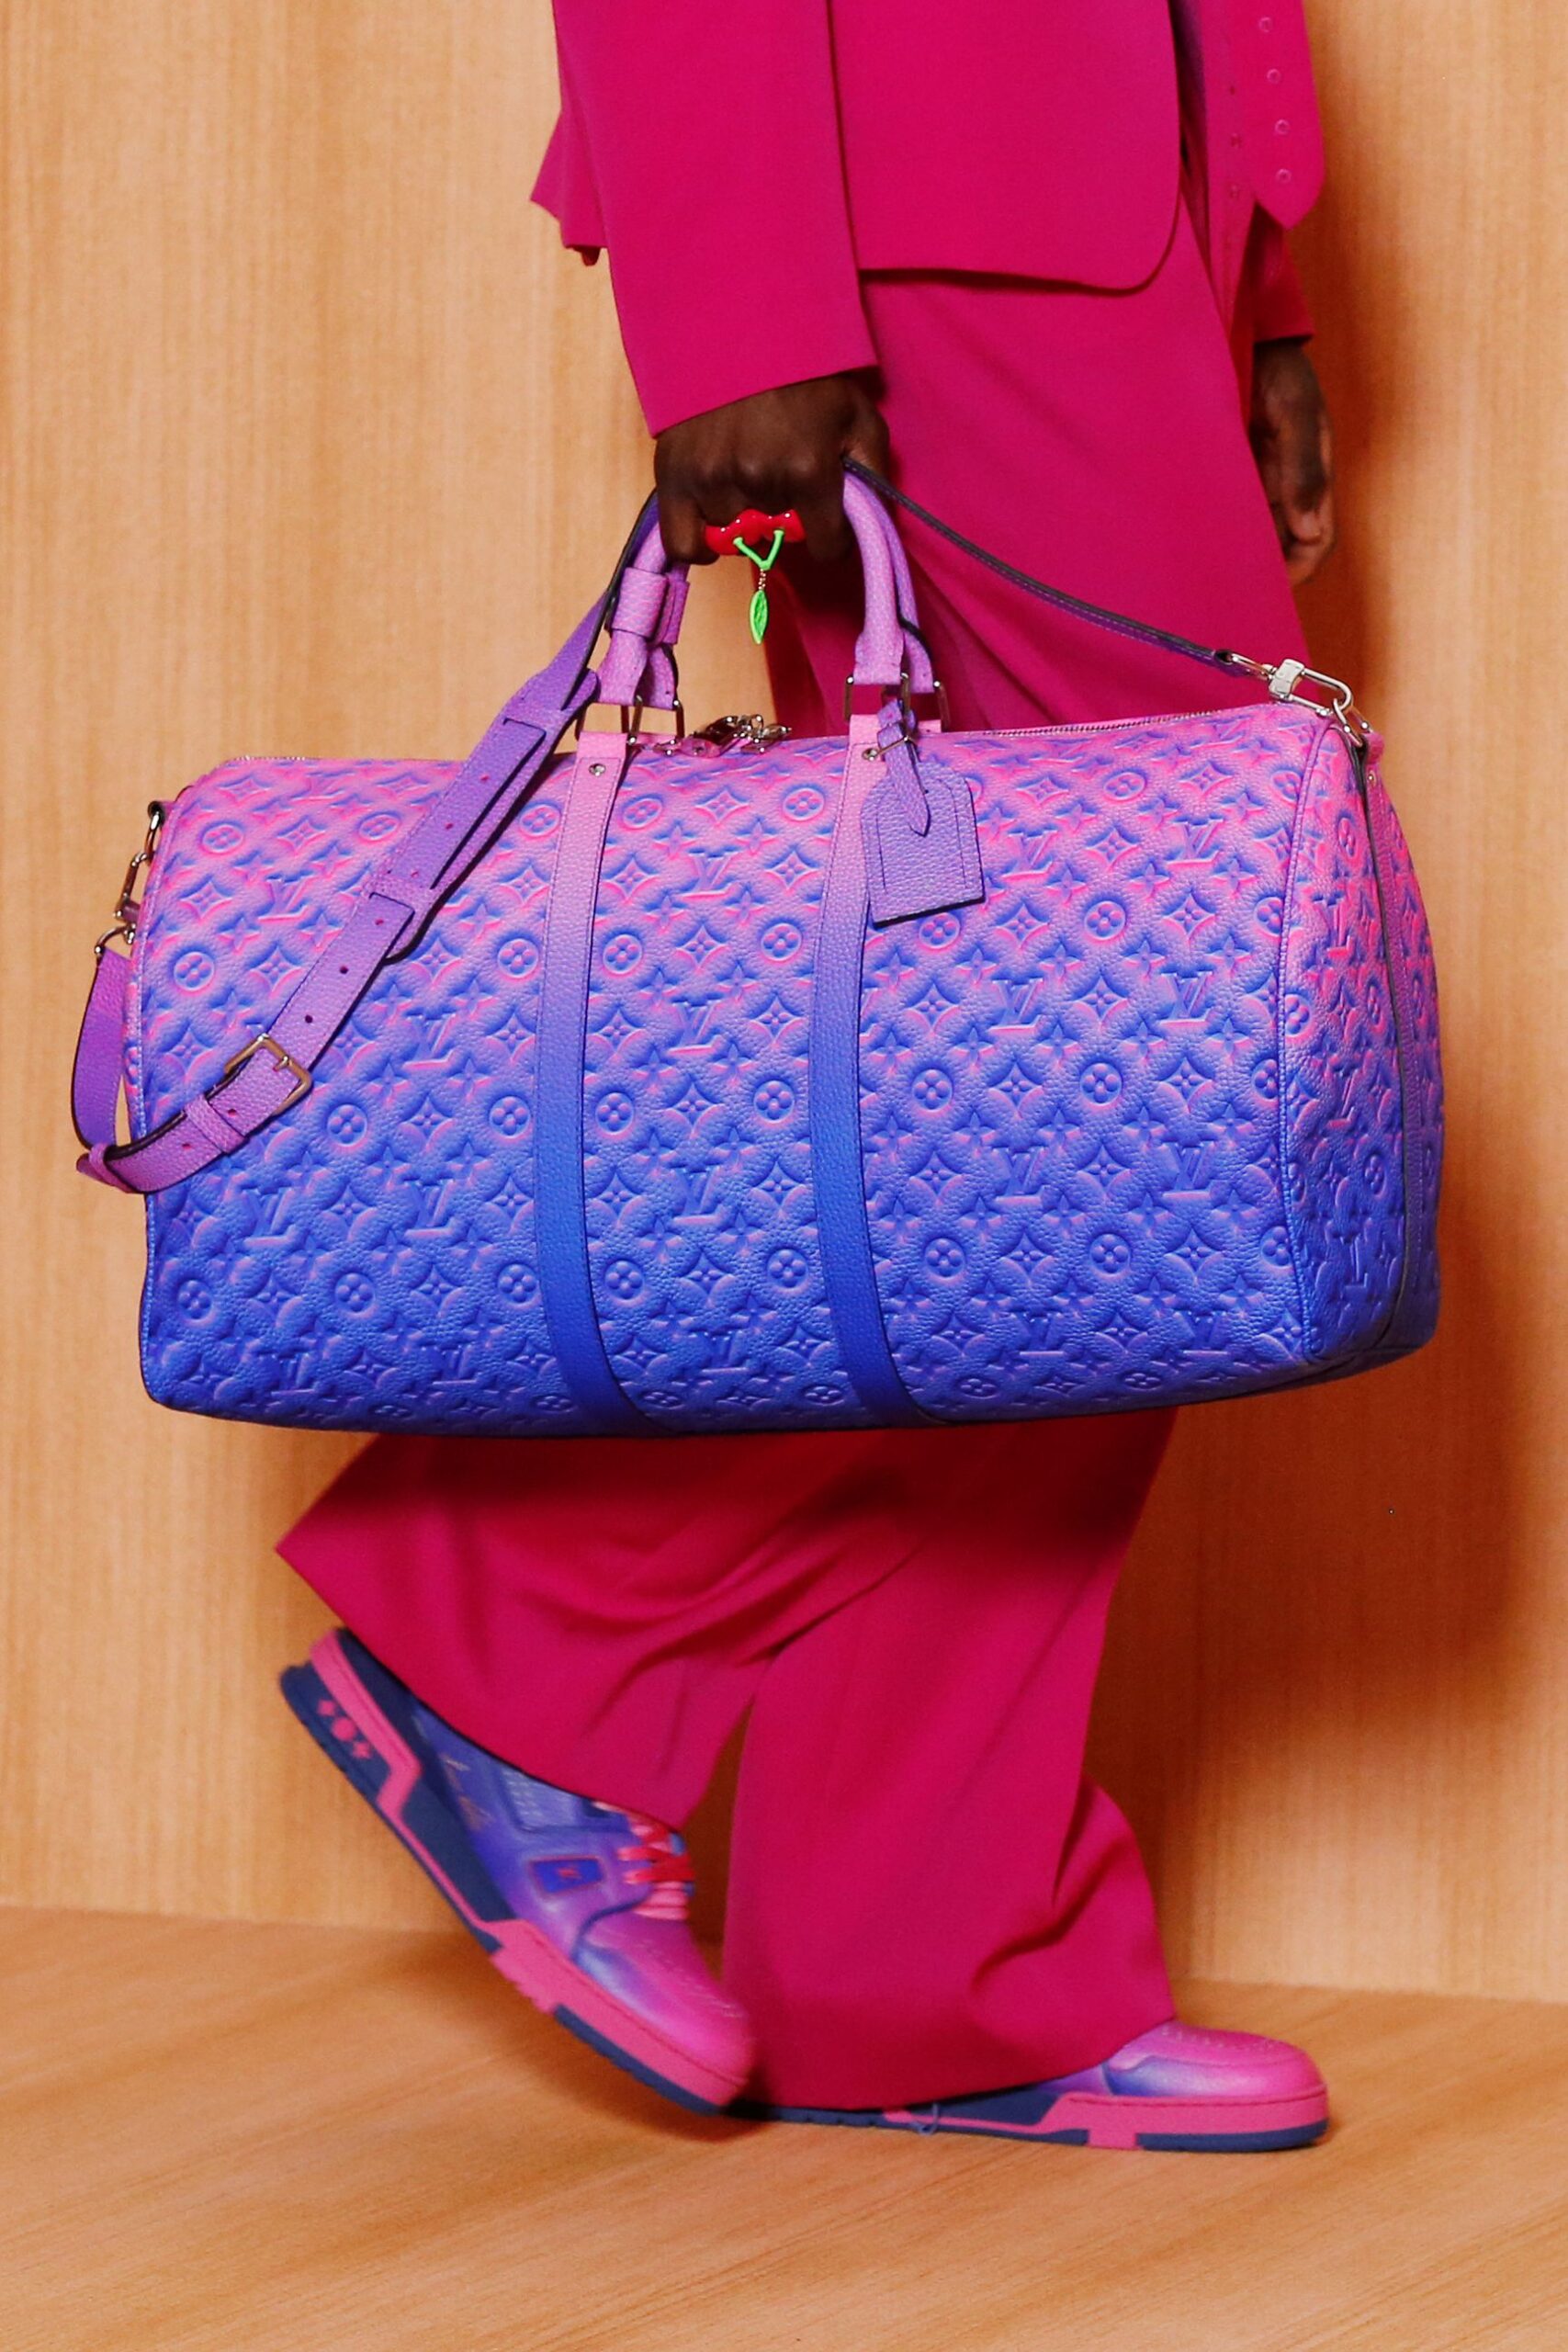 Chanel Handbags Summer 2022